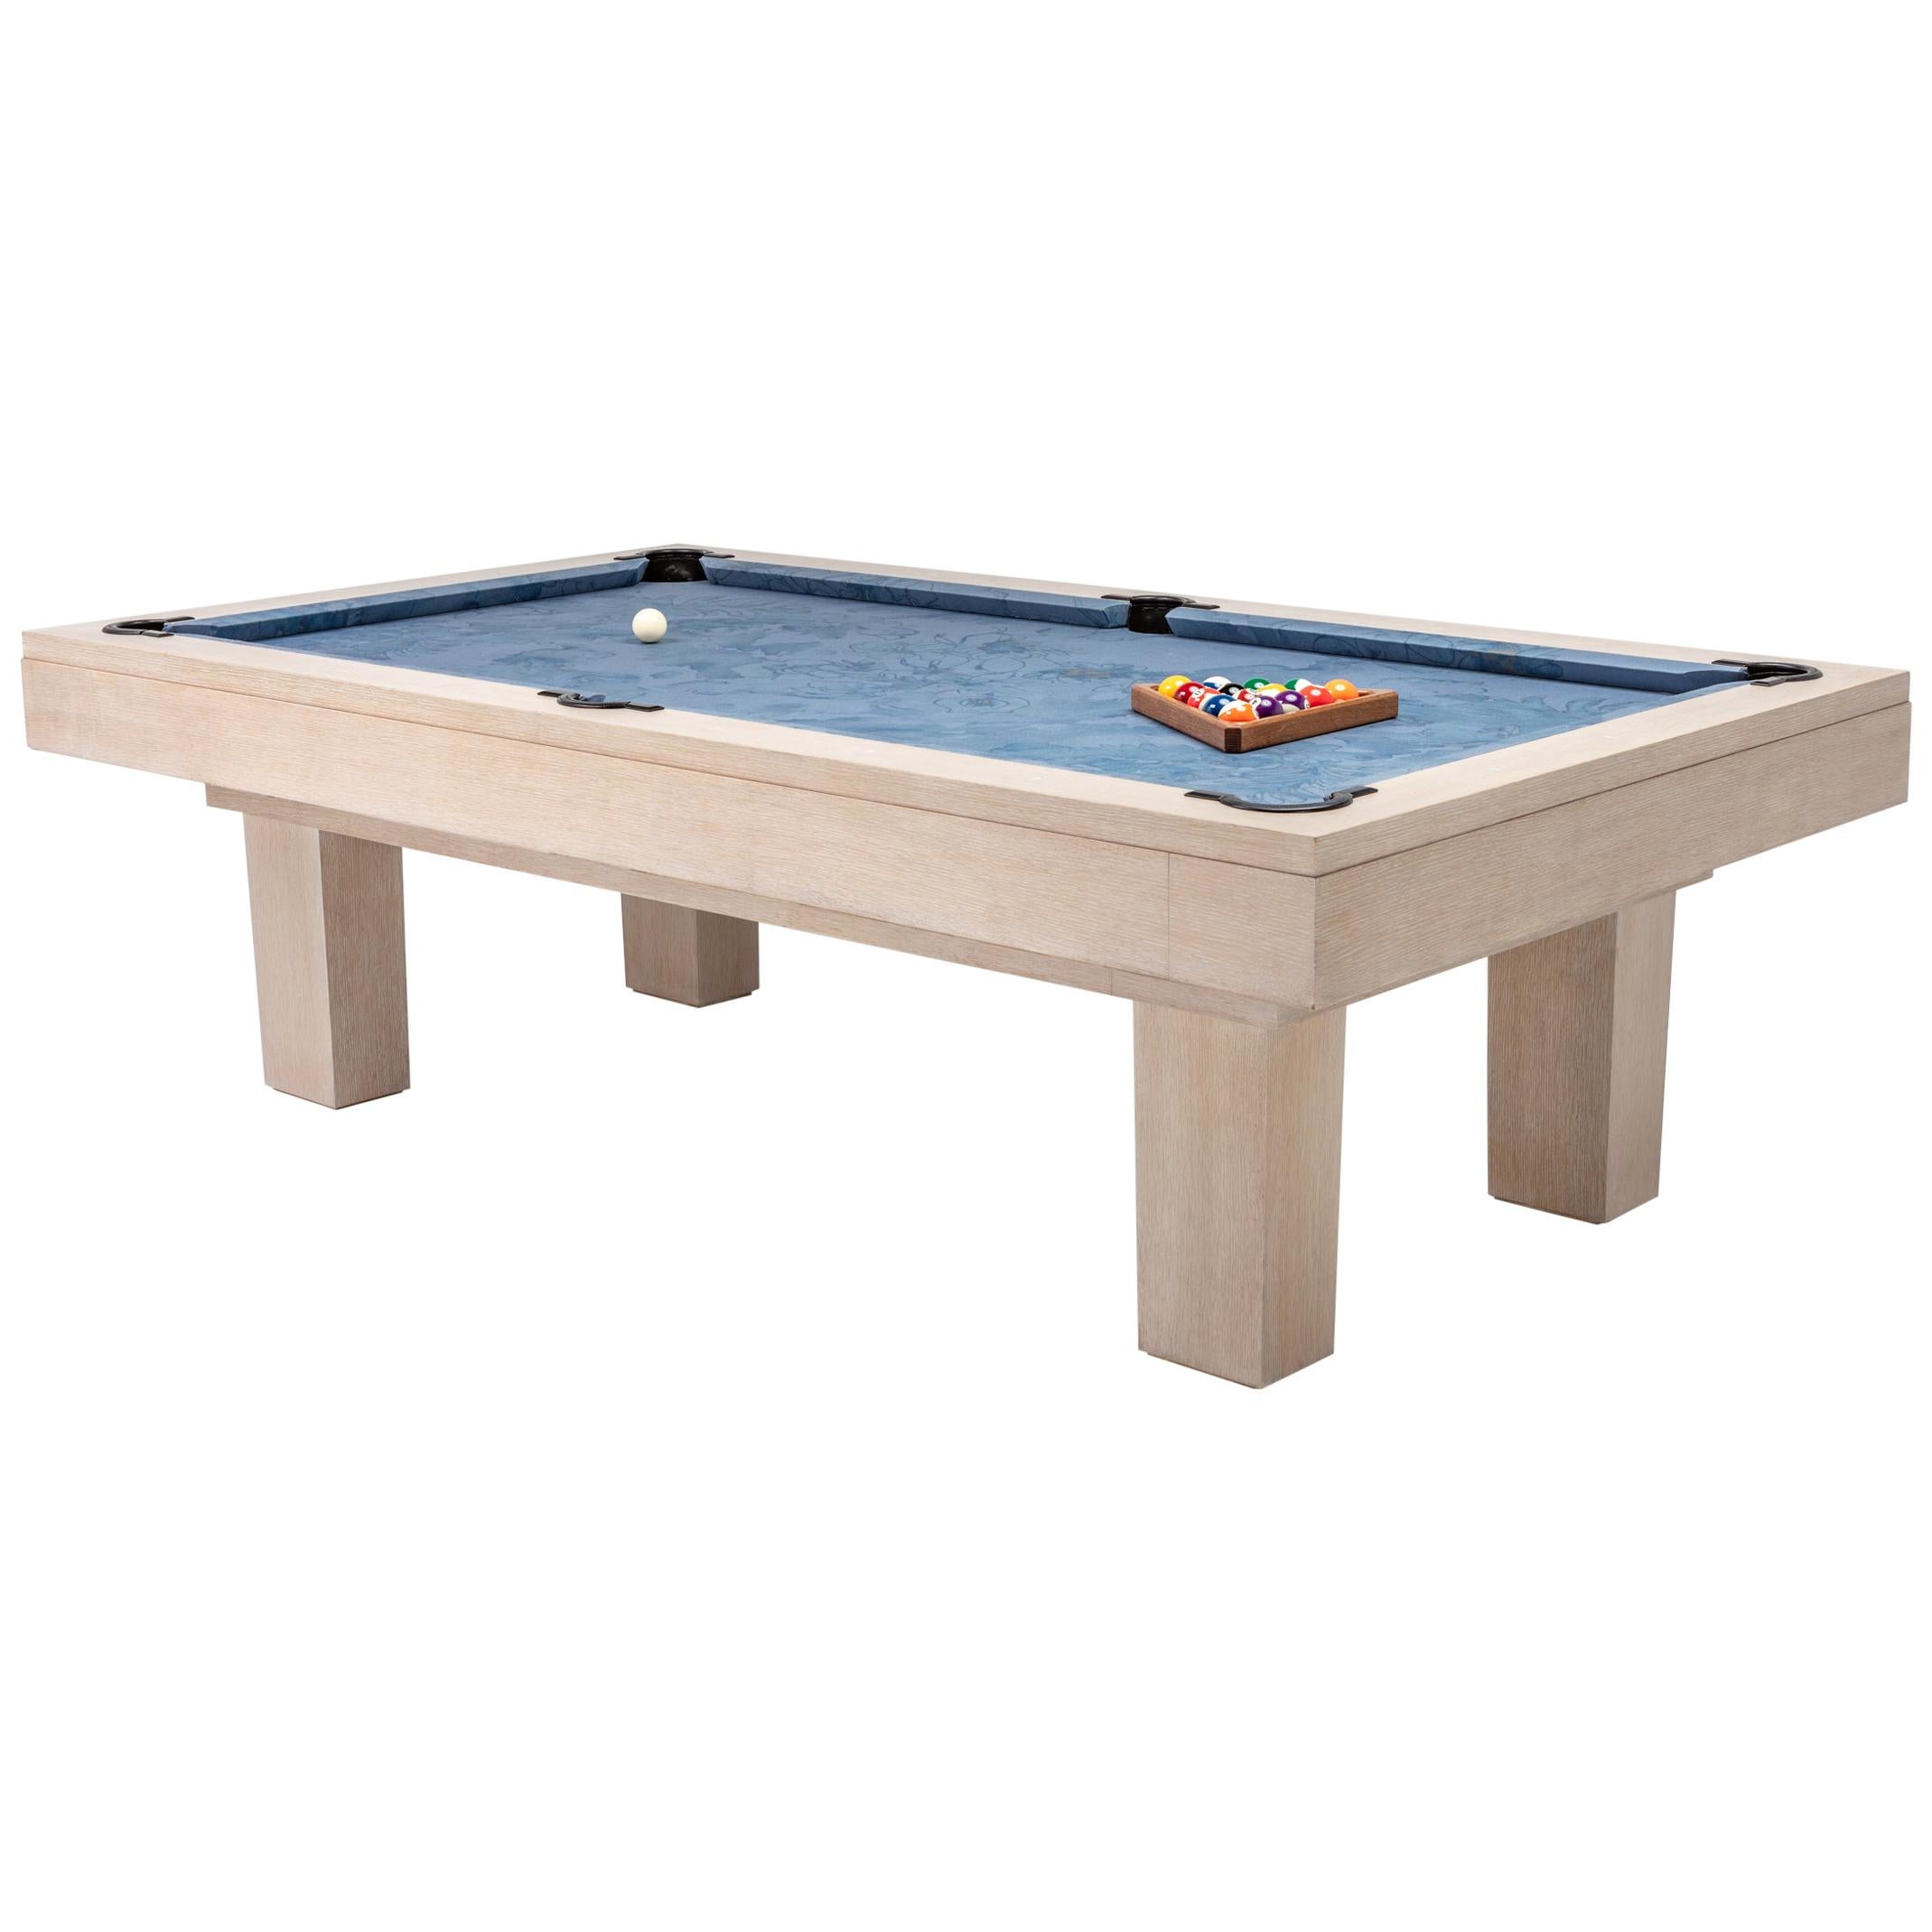 Aero Billiards Table For Sale